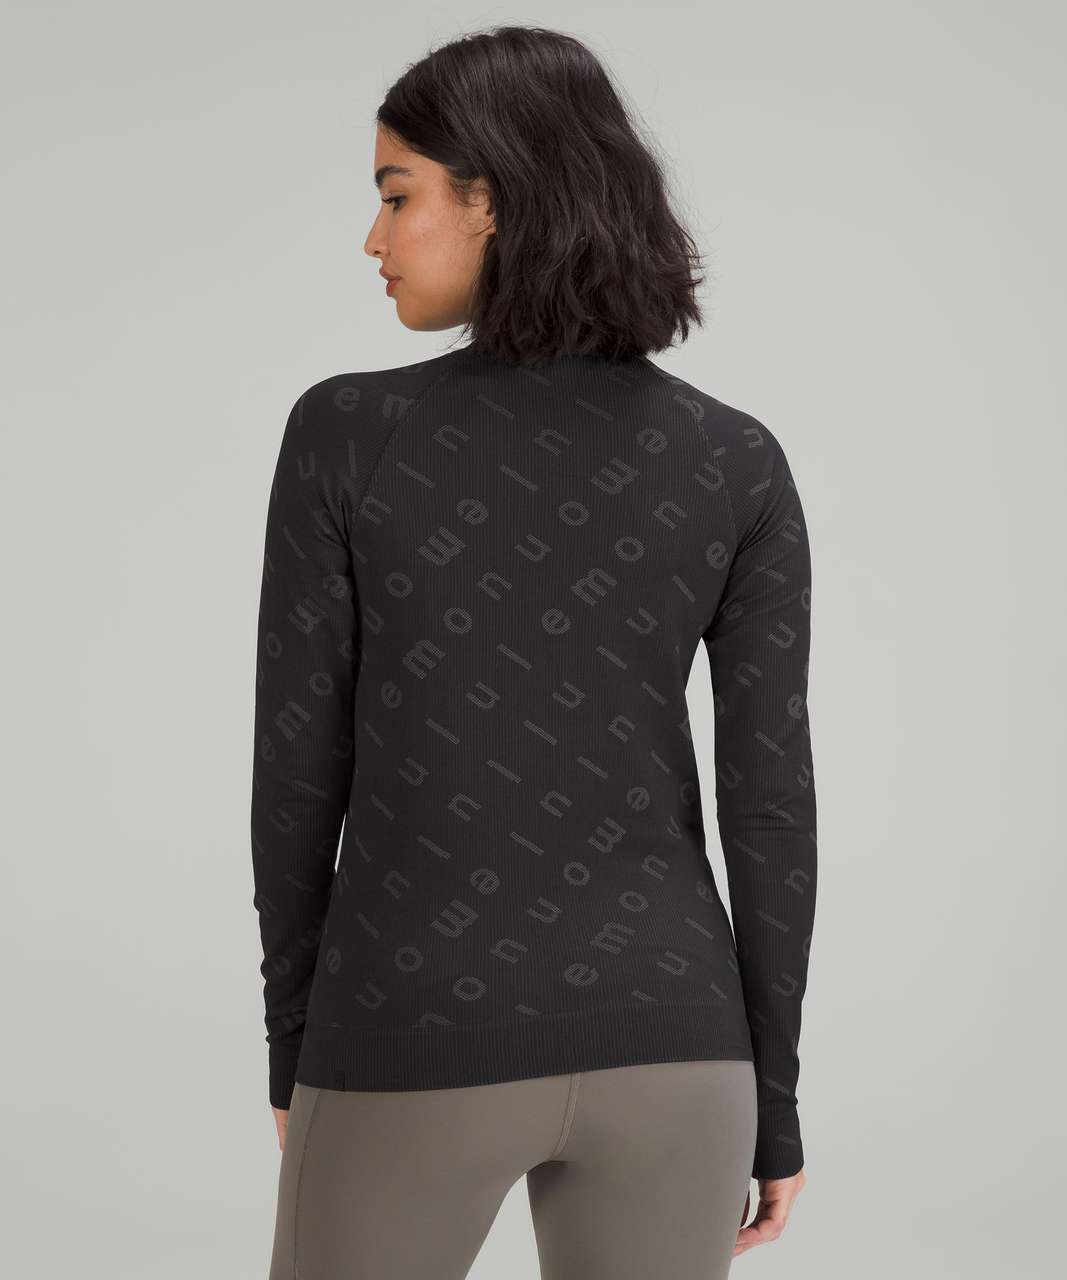 Lululemon Rest Less Pullover - Logo Letter Black / Graphite Grey